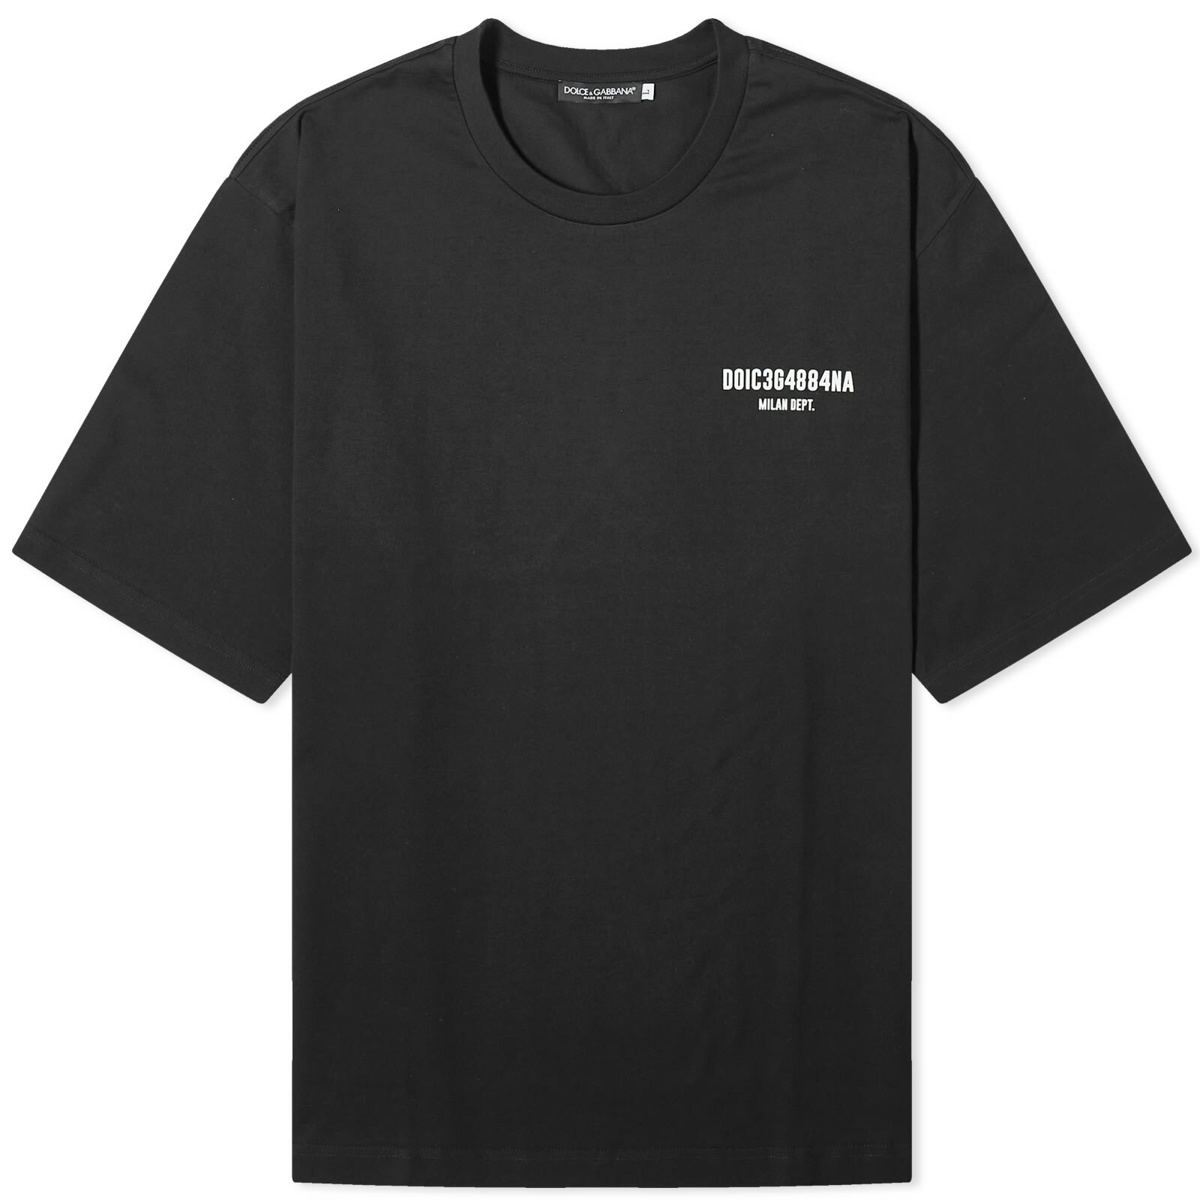 Dolce & Gabbana - Printed Cotton-Jersey T-Shirt - Black Dolce & Gabbana